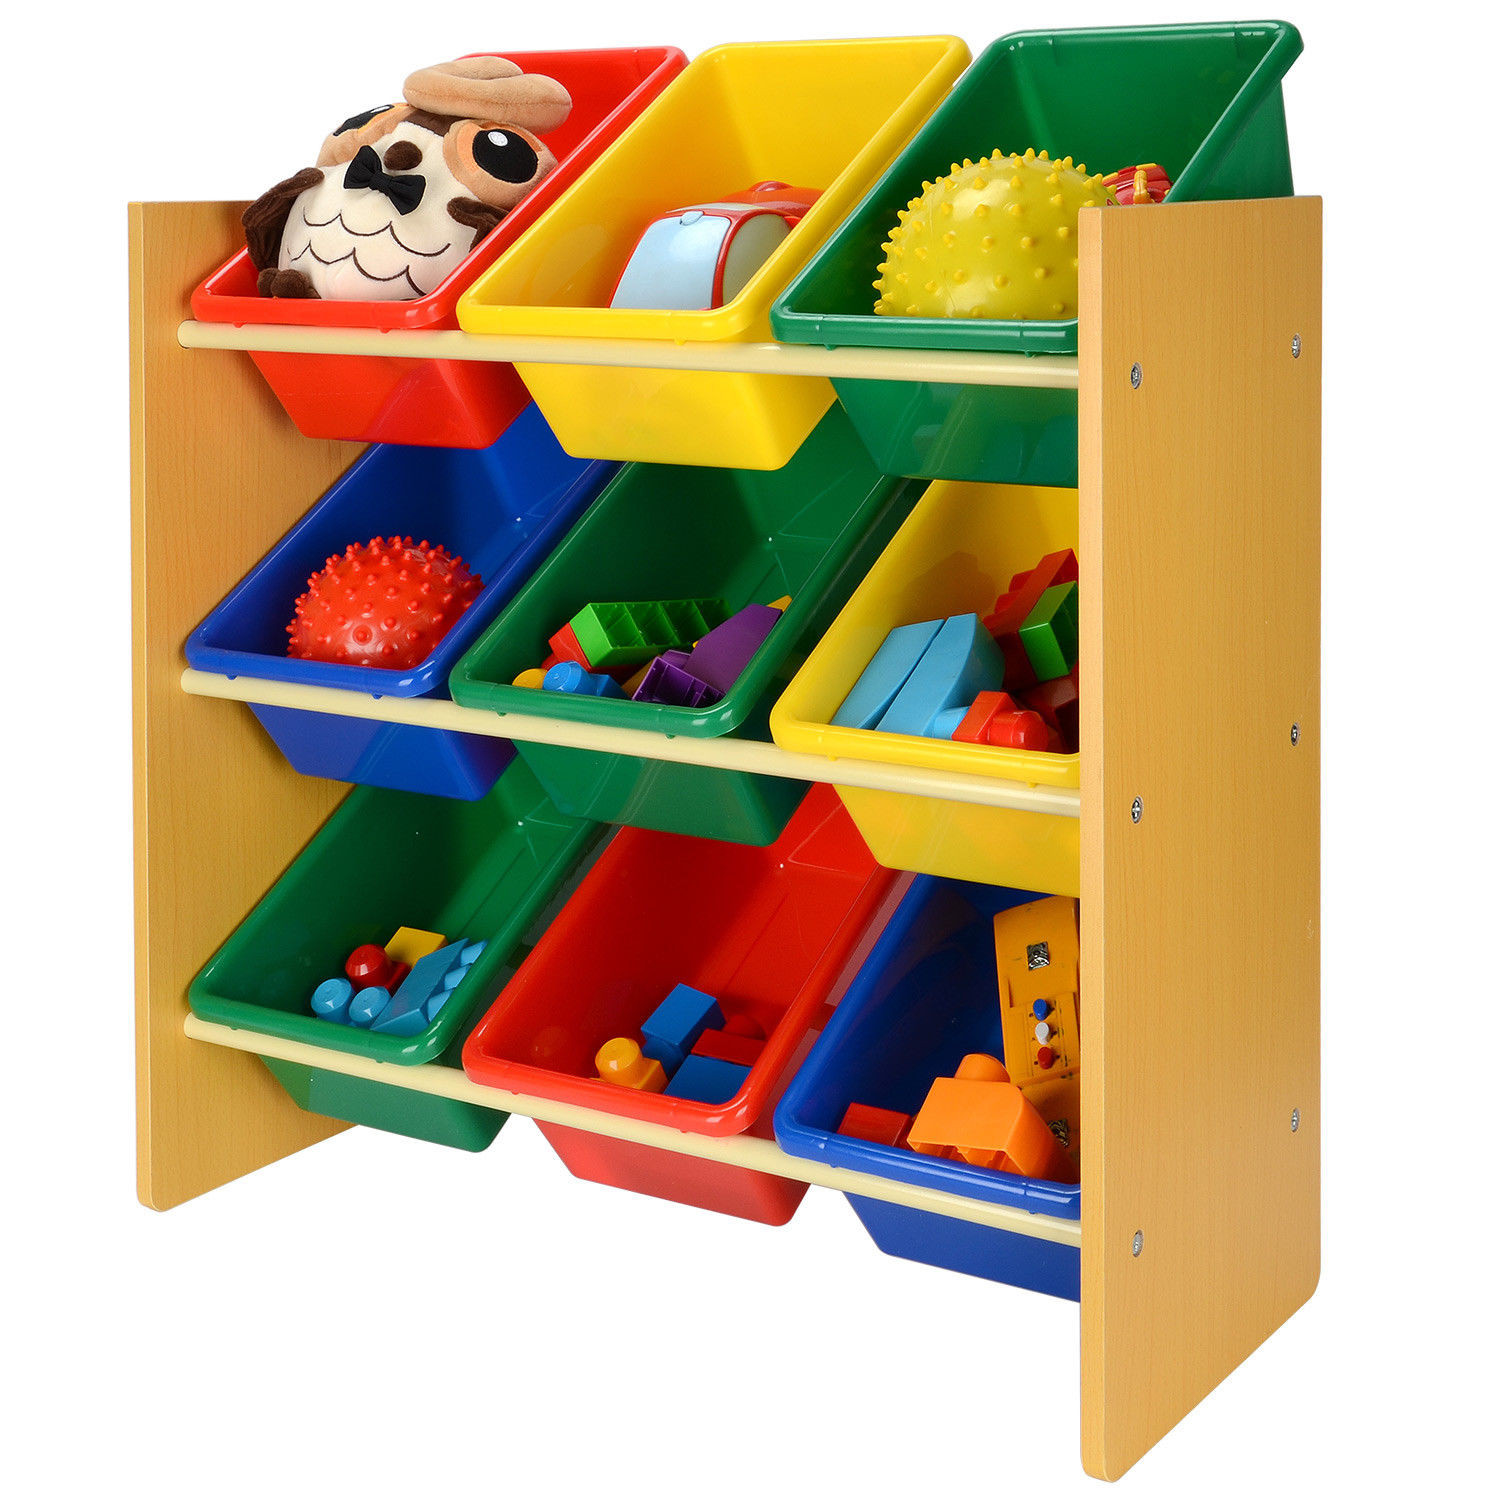 Kids Storage Containers
 LIVEDITOR Children Wooden Storage Unit 12 Bins Toy